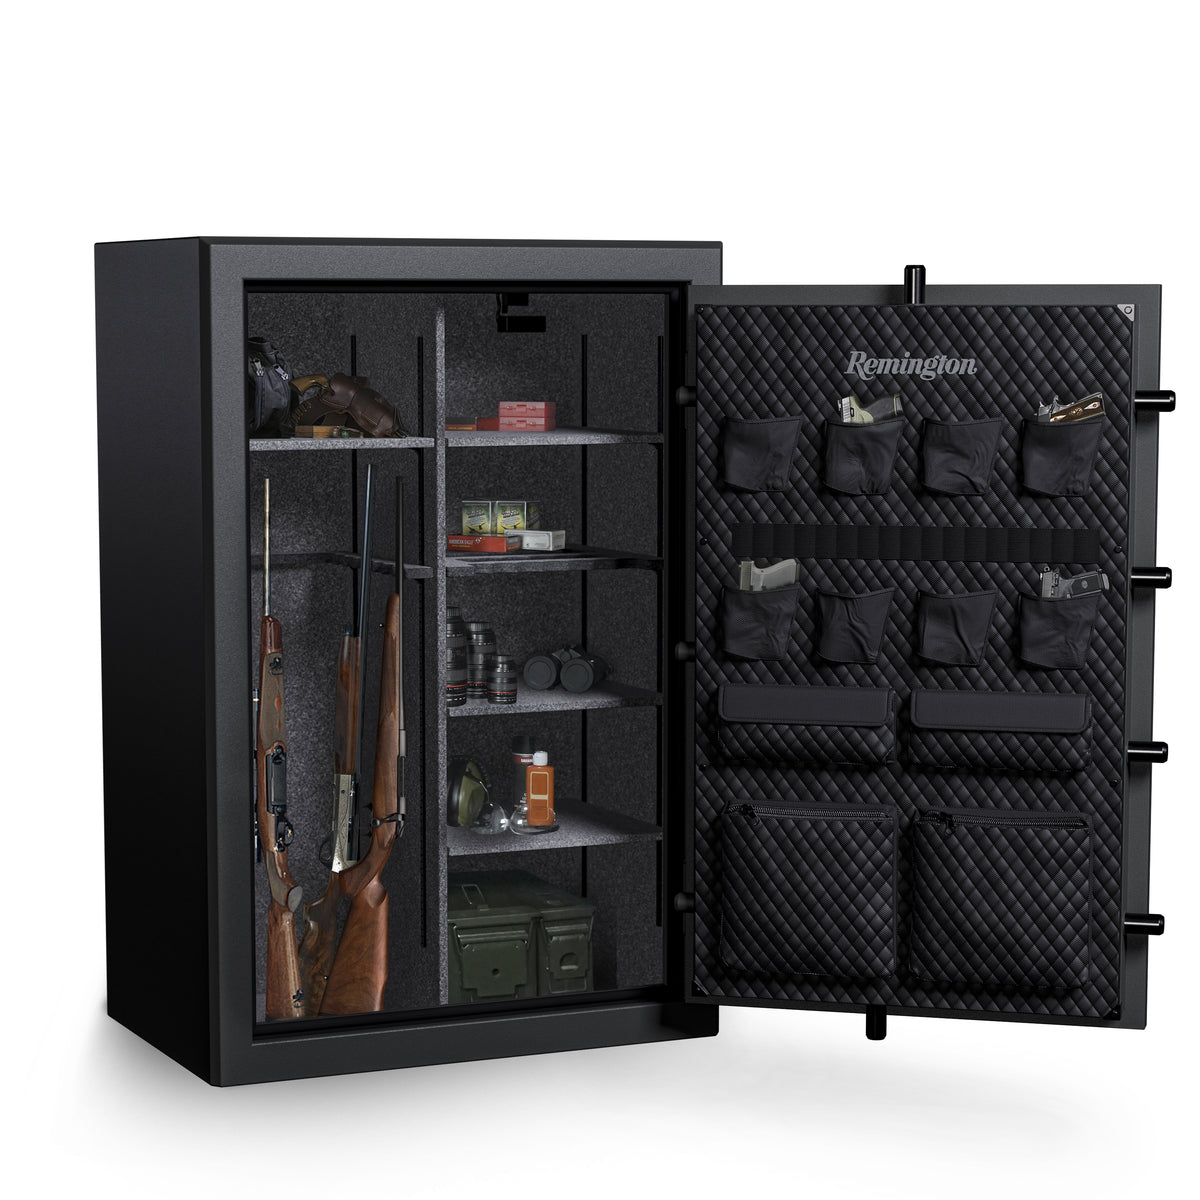 Remington SAR5952GC Gun Club Series 52 Gun Safe Door Open Full